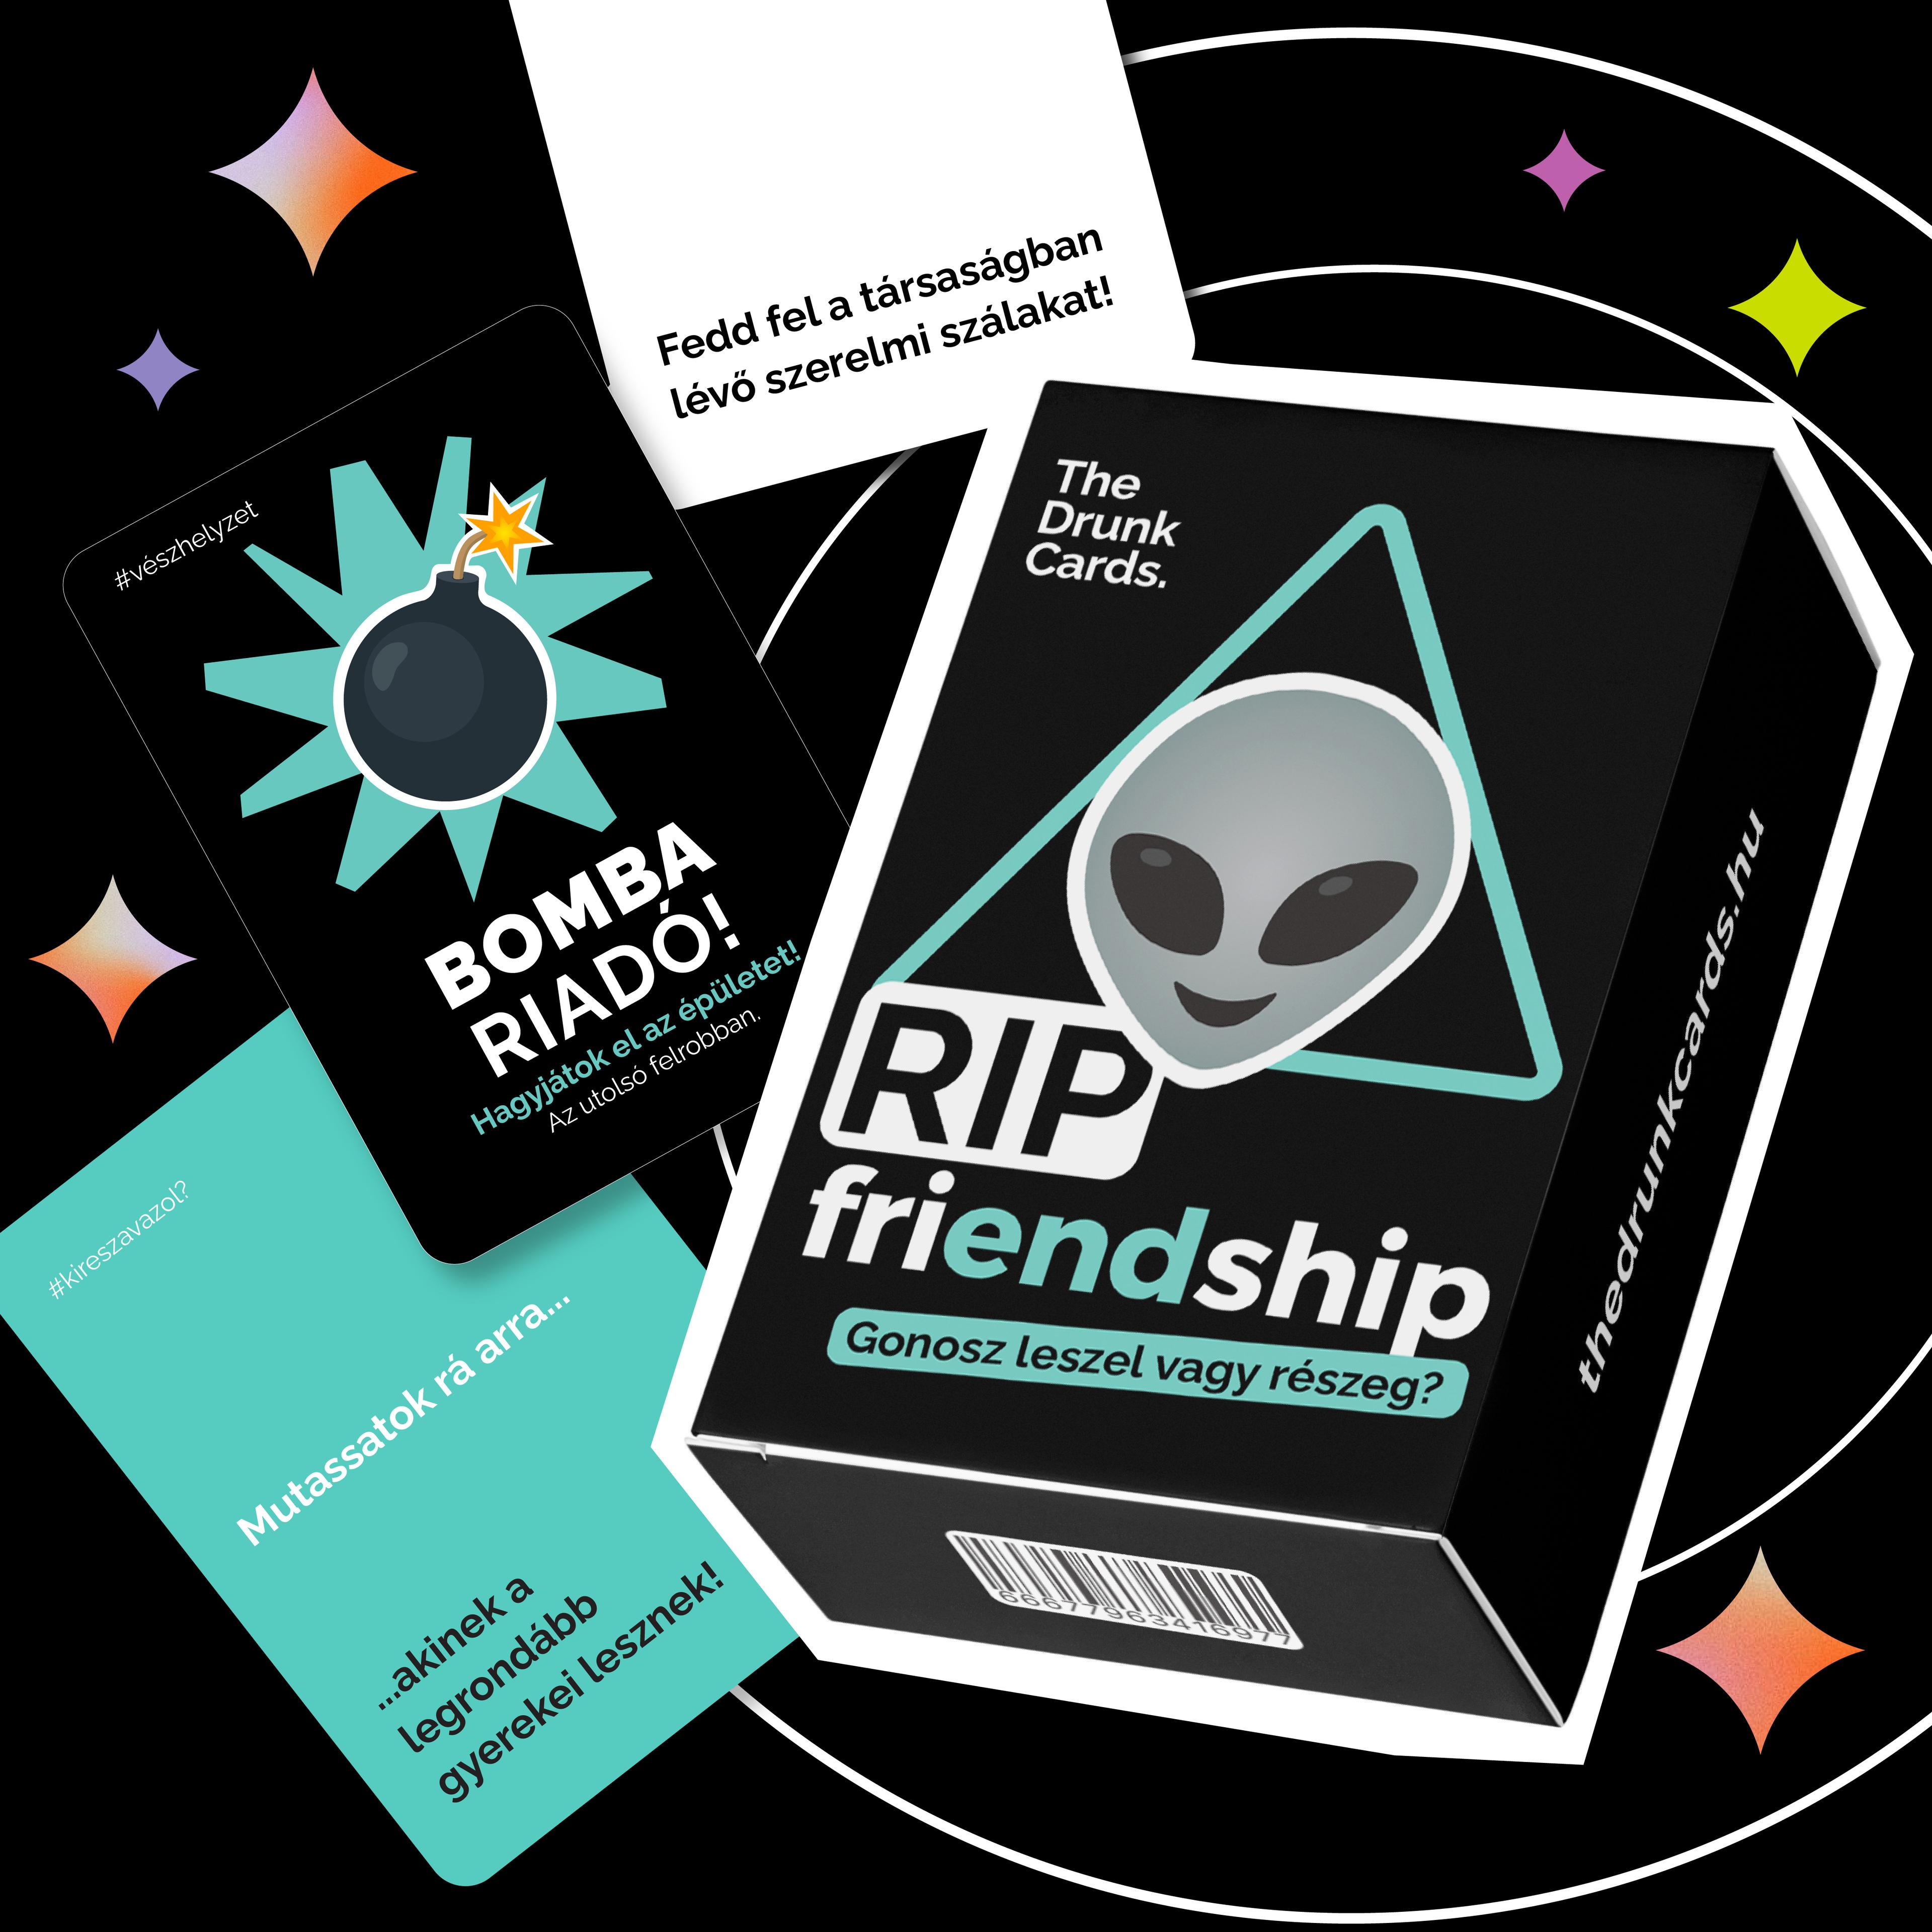 Rip Friendship - Gonosz leszel vagy részeg ivós kártyajáték